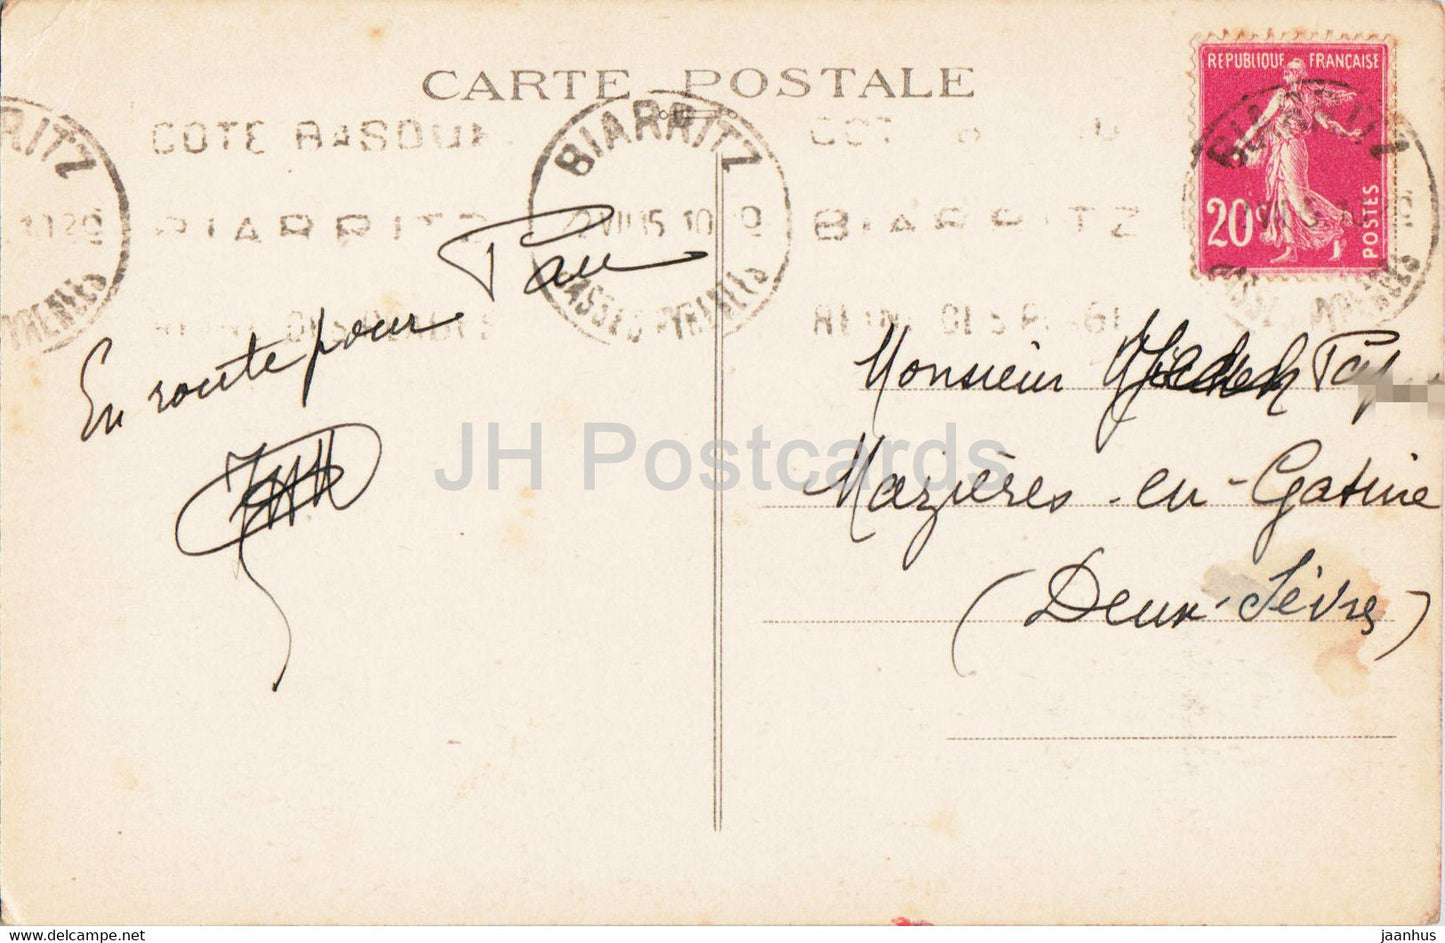 Biarritz - Rocher de la Vierge - Entrée du Port Vieux - 15 - carte postale ancienne - 1935 - France - occasion